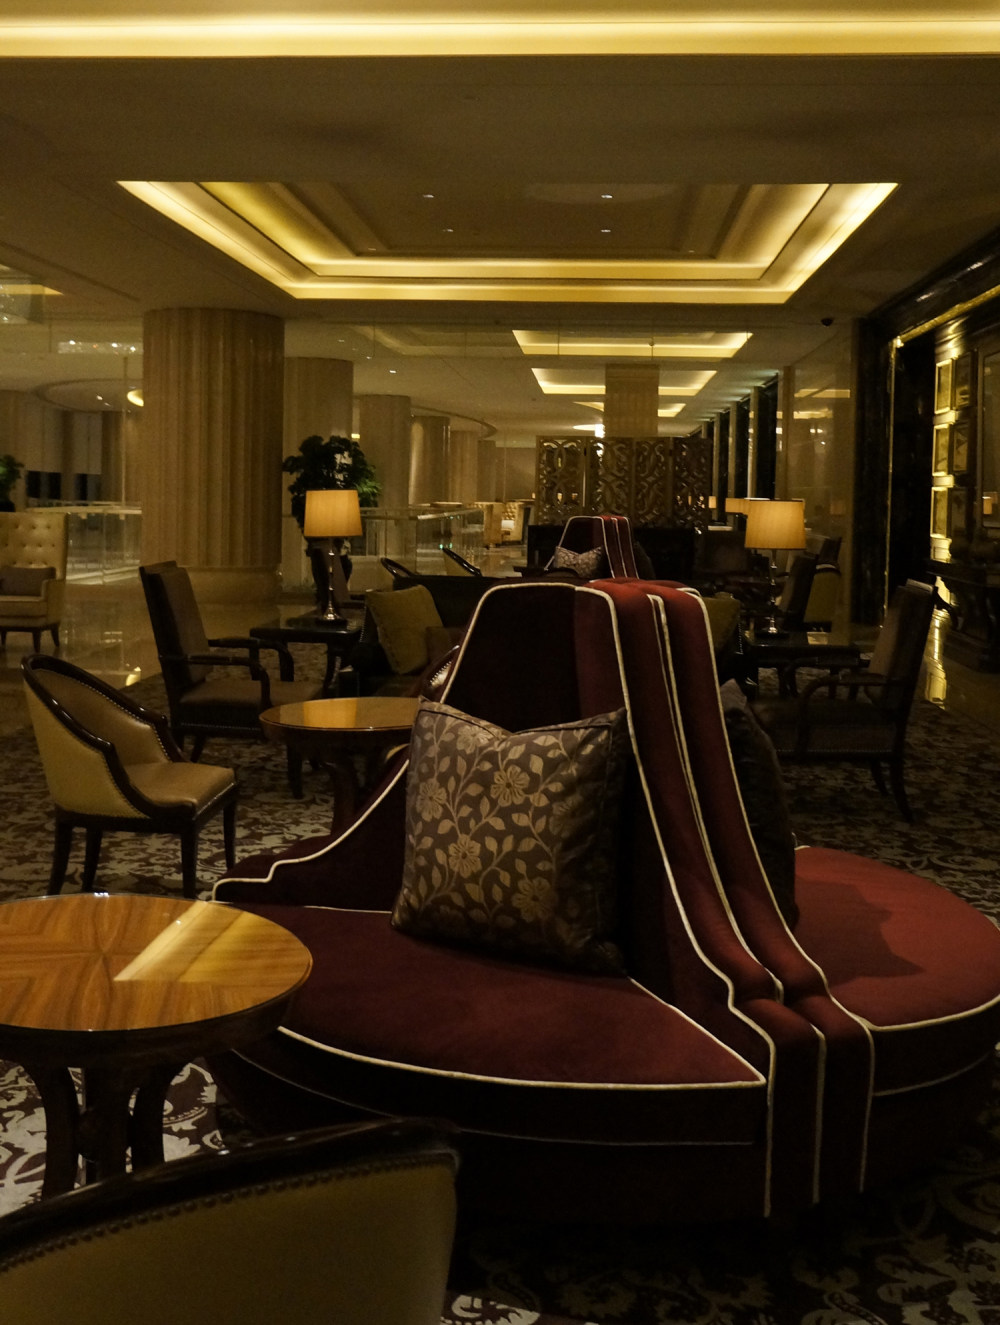 上海华尔道夫酒店(The Waldorf Astoria OnTheBund)(HBA)10.9第10页更新__DSC0261.JPG